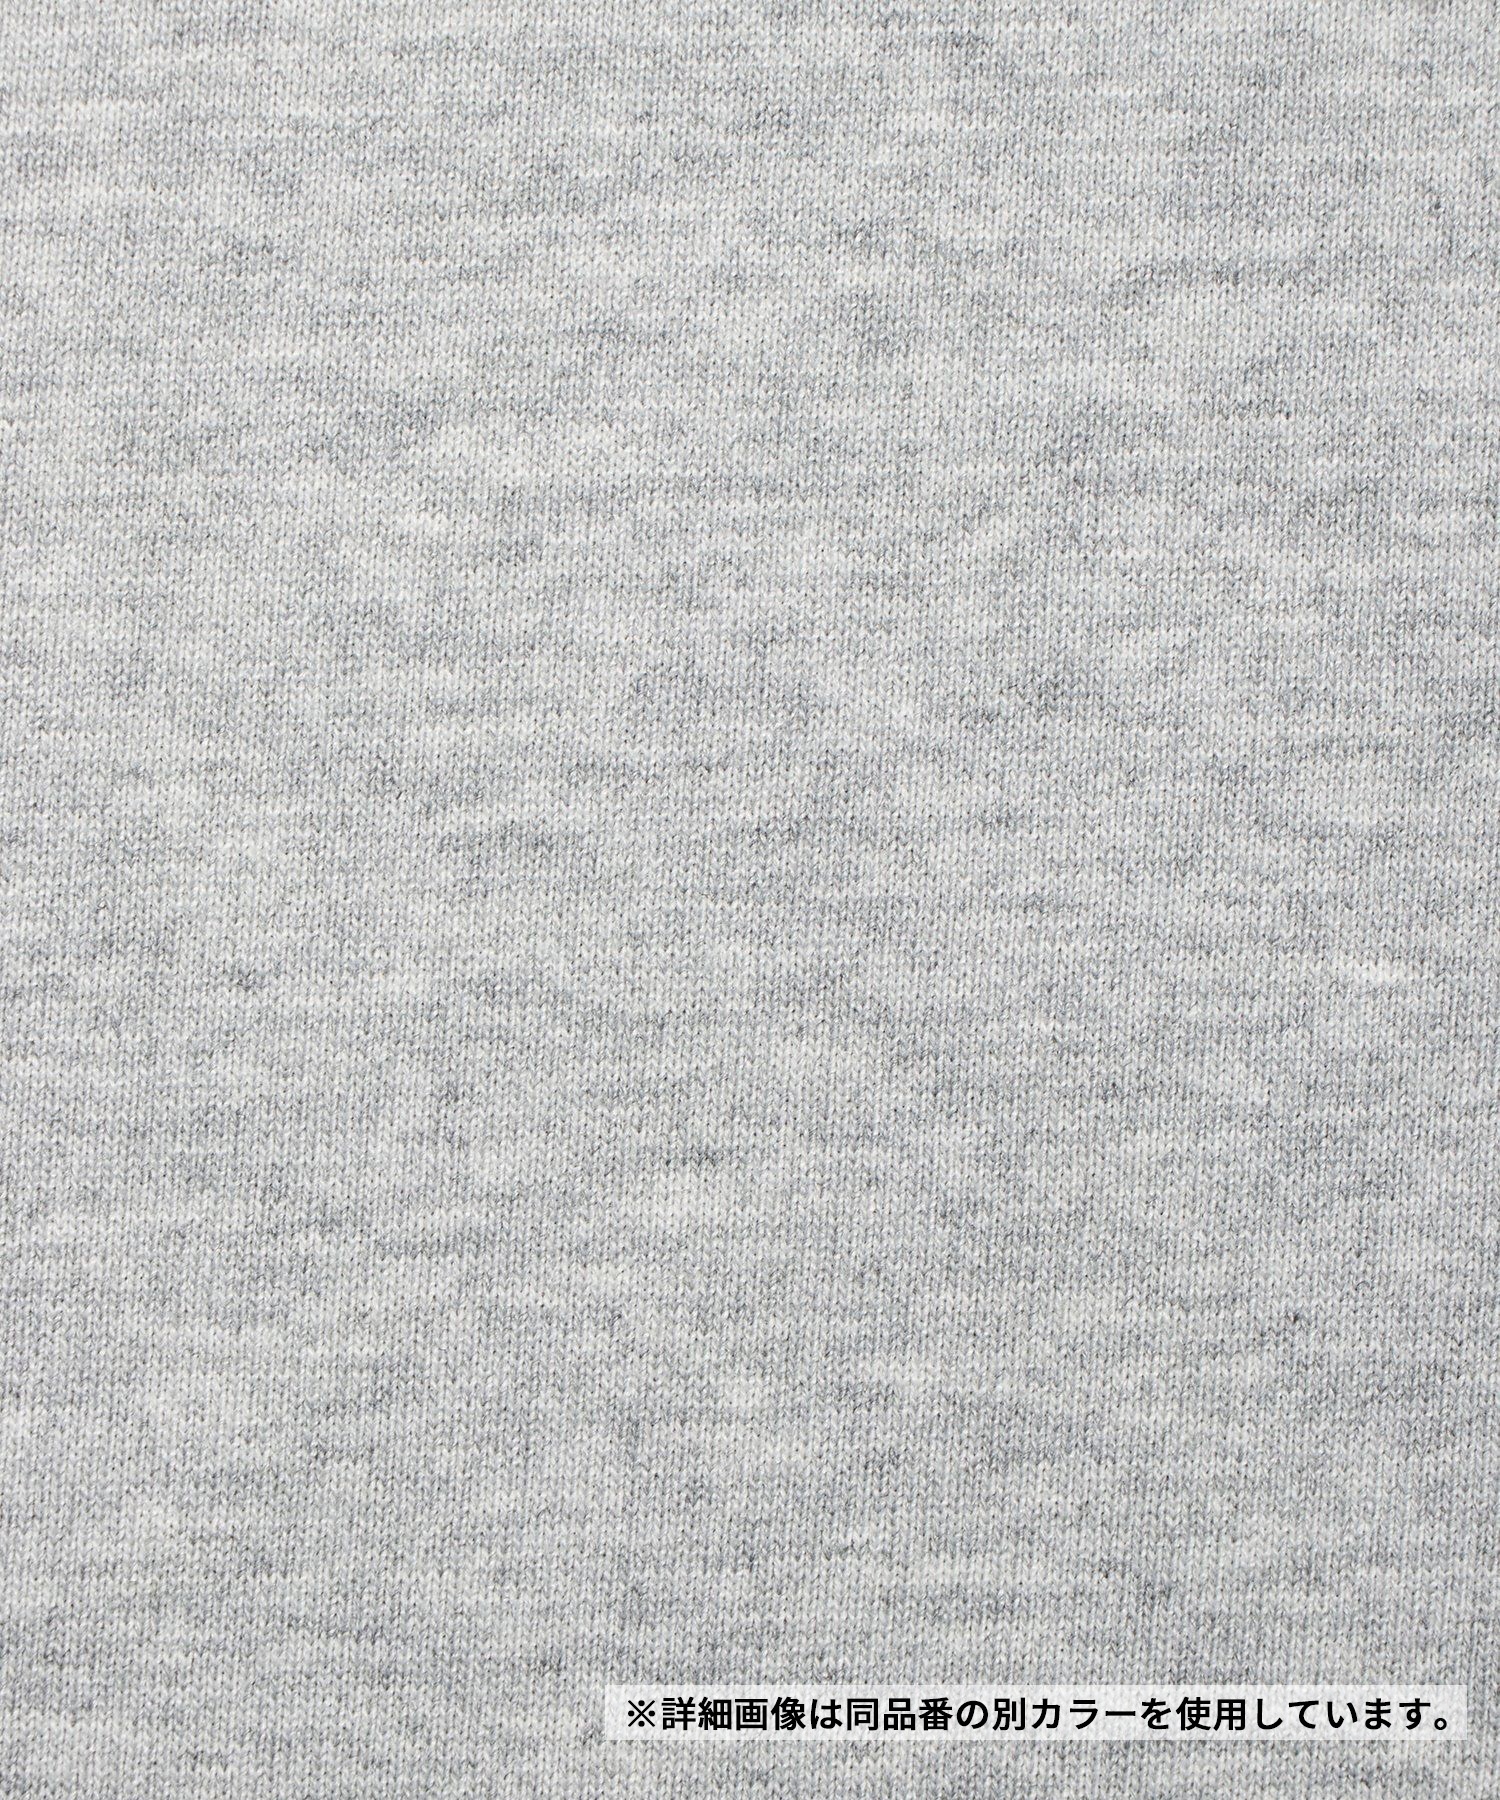 【マトメガイ対象】THE NORTH FACE ザ・ノース・フェイス メンズ Tシャツ 半袖 スクエアロゴ バックプリント 速乾 NT32447 KS(KS-S)